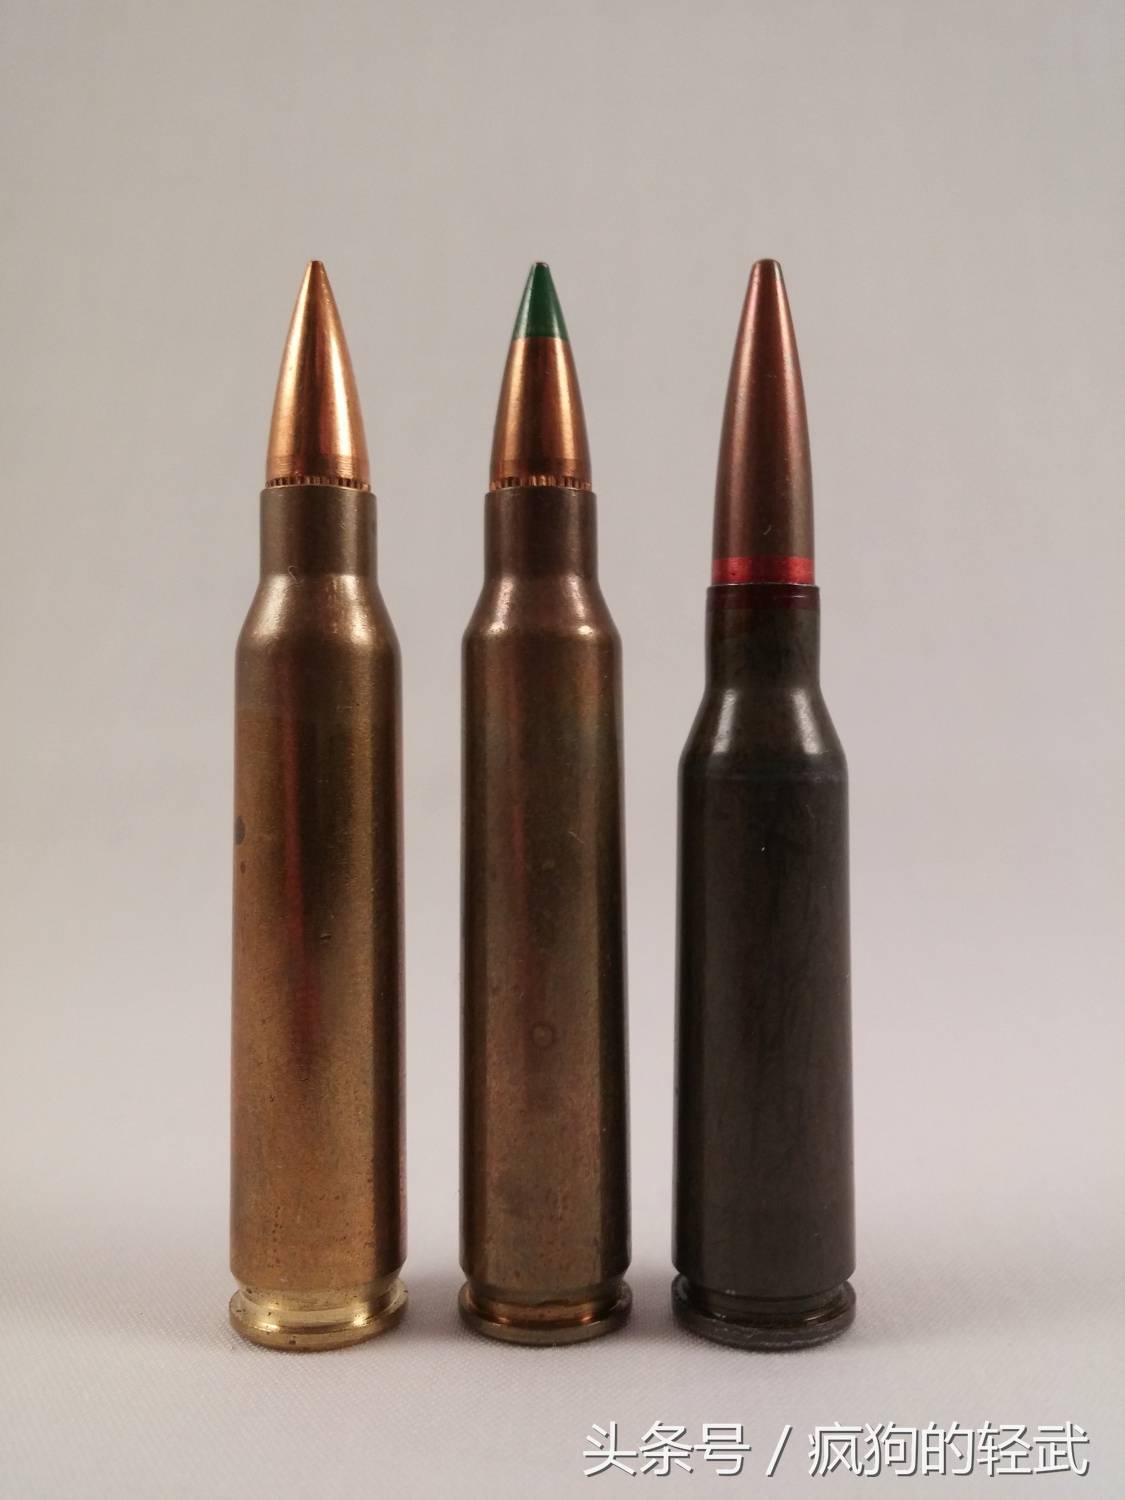 各国纷纷采用小口径子弹,什么是小口径,常用的小口径子弹有哪些